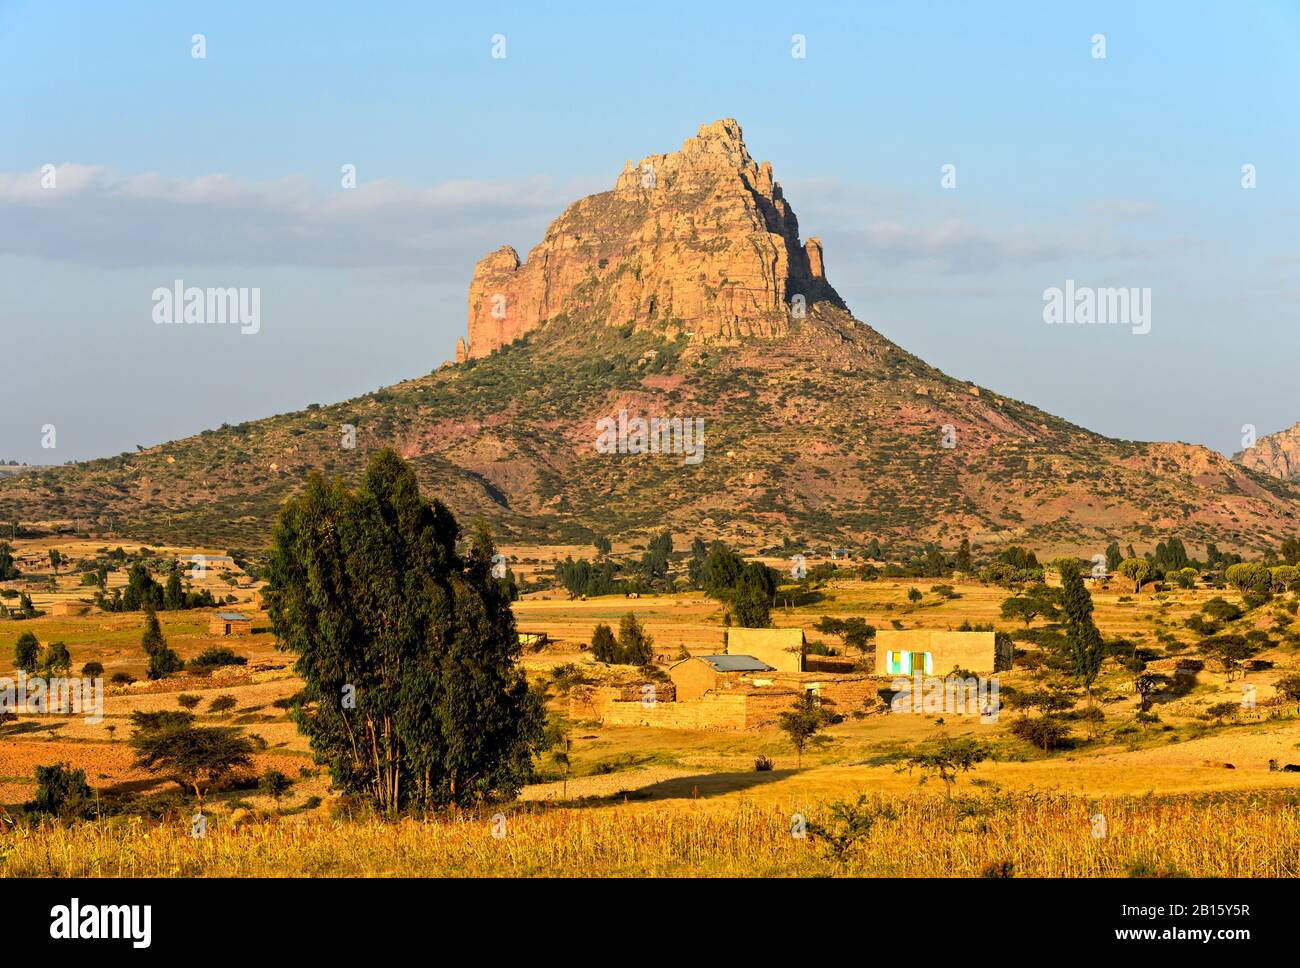 Paysage avec montagne érodée à plateau plat, Amba, dans les hautes-terres éthiopiennes, Tigray, Ethiopie Banque D'Images